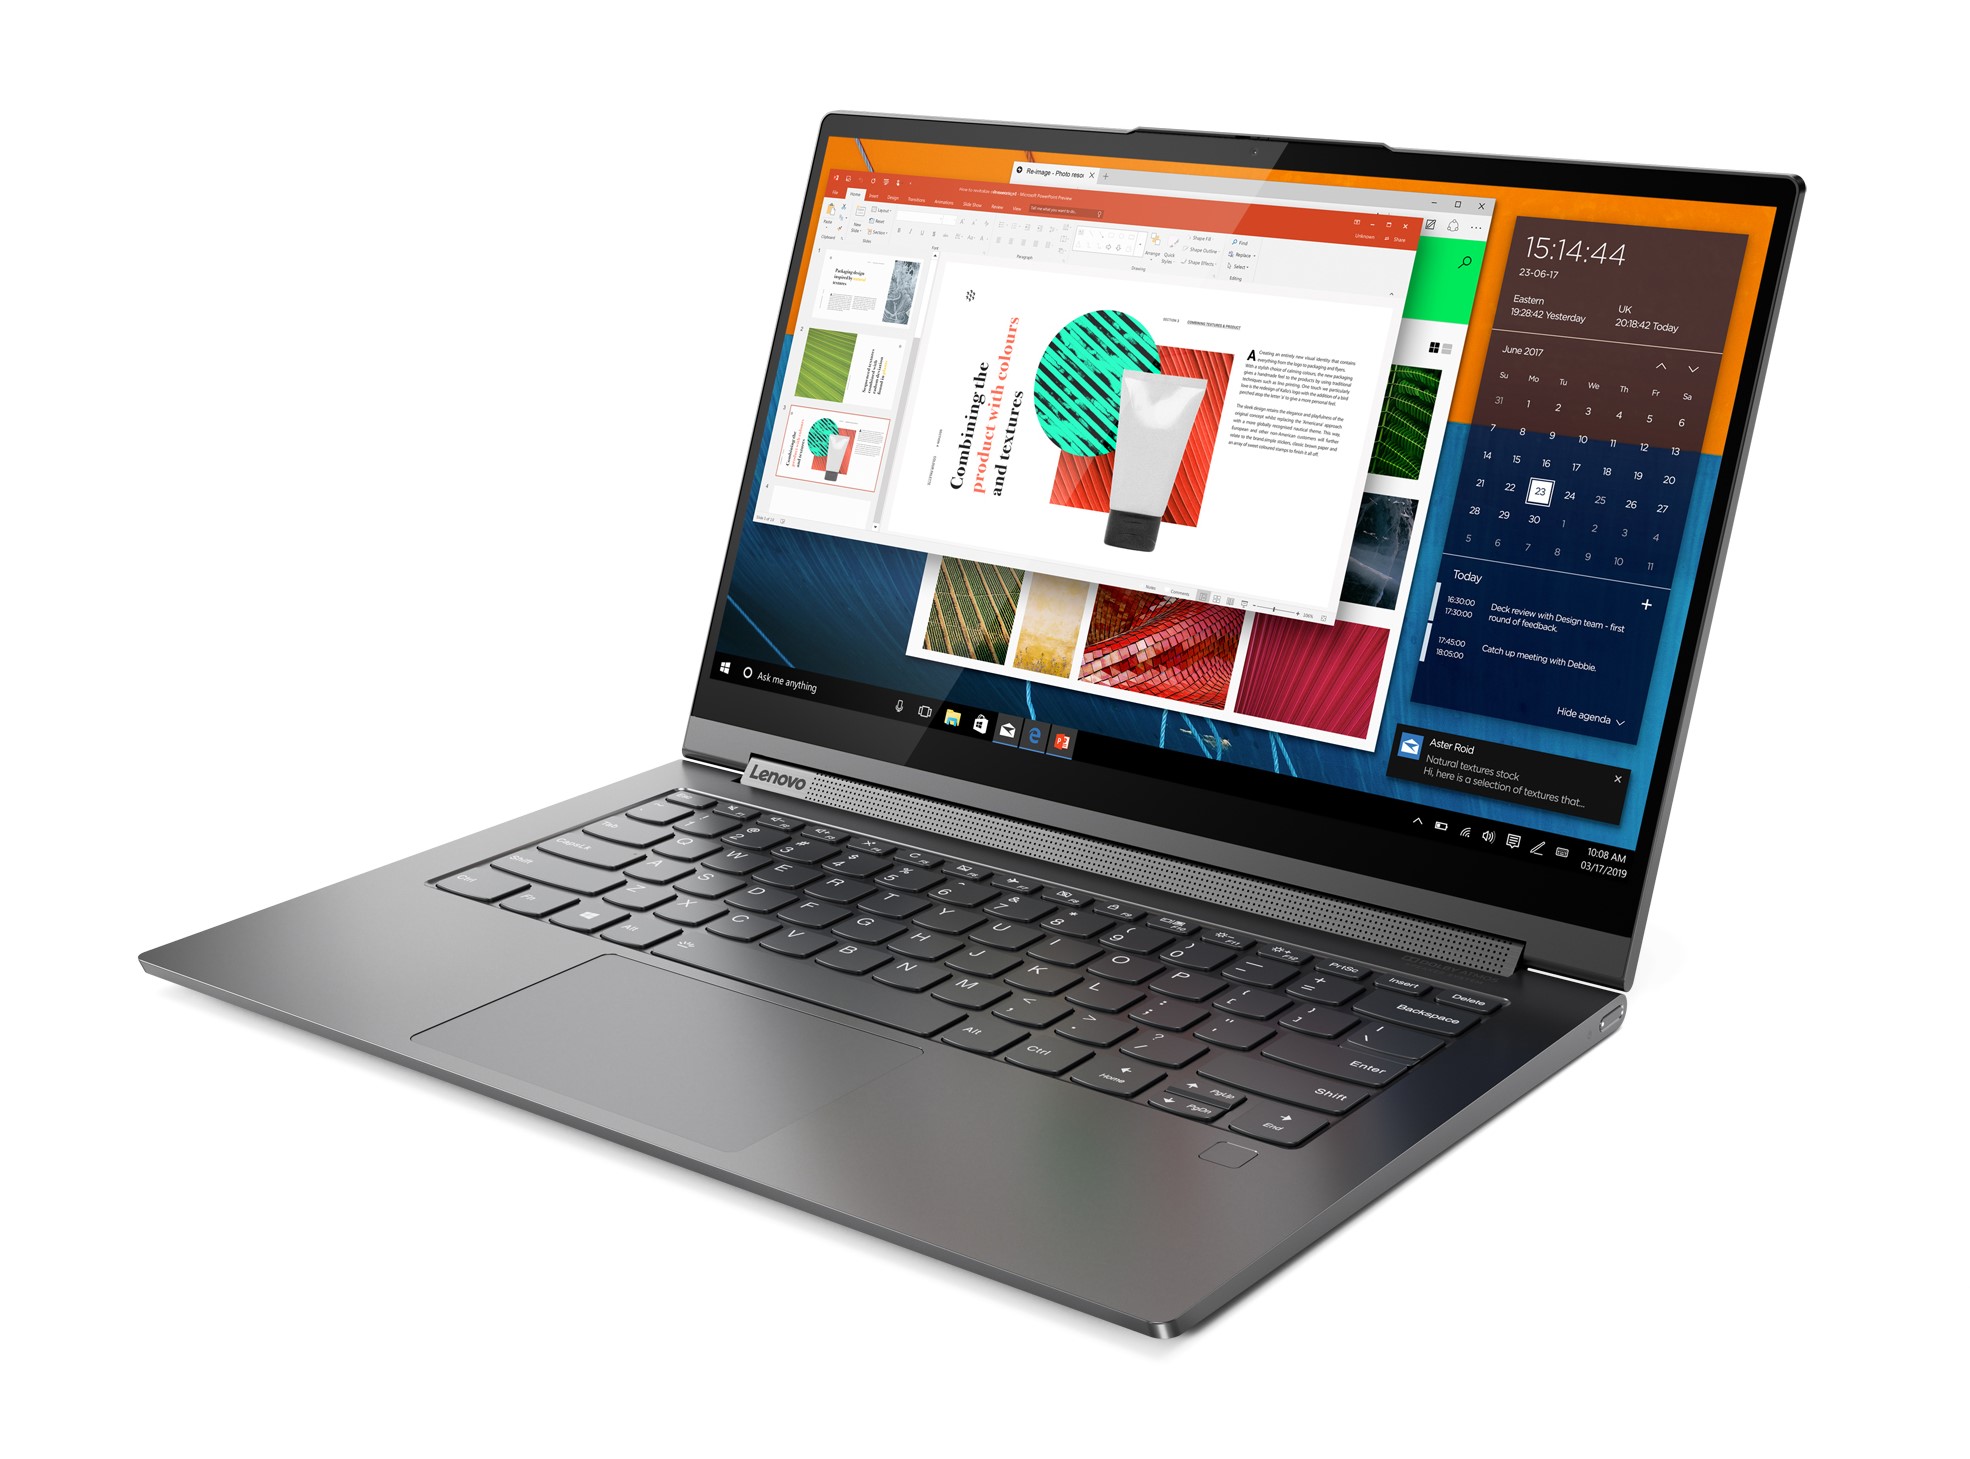 Lenovo ra mắt laptop cao cấp Yoga C940 với khả năng chuyển đổi 2-trong-1, giá 49,990,000 VND